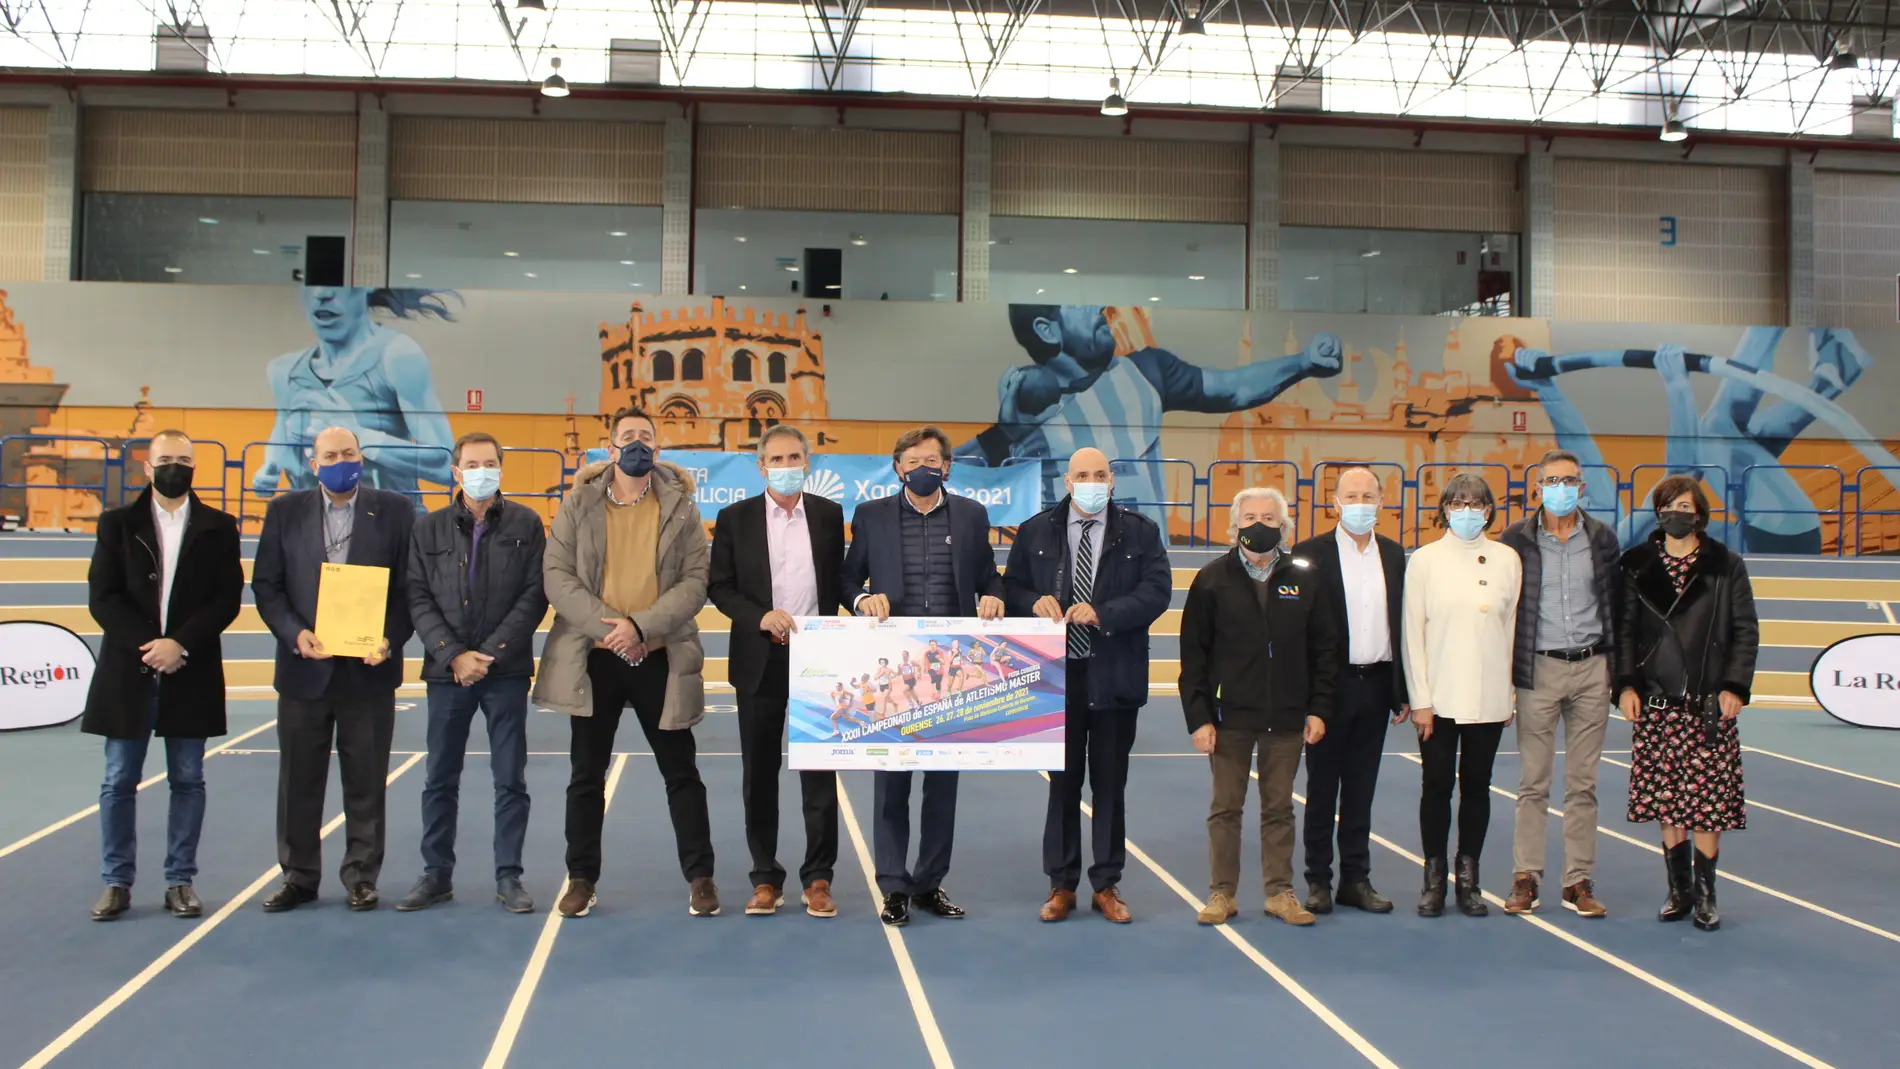 O máster de Ourense pecha un 2021 dourado para o atletismo galego